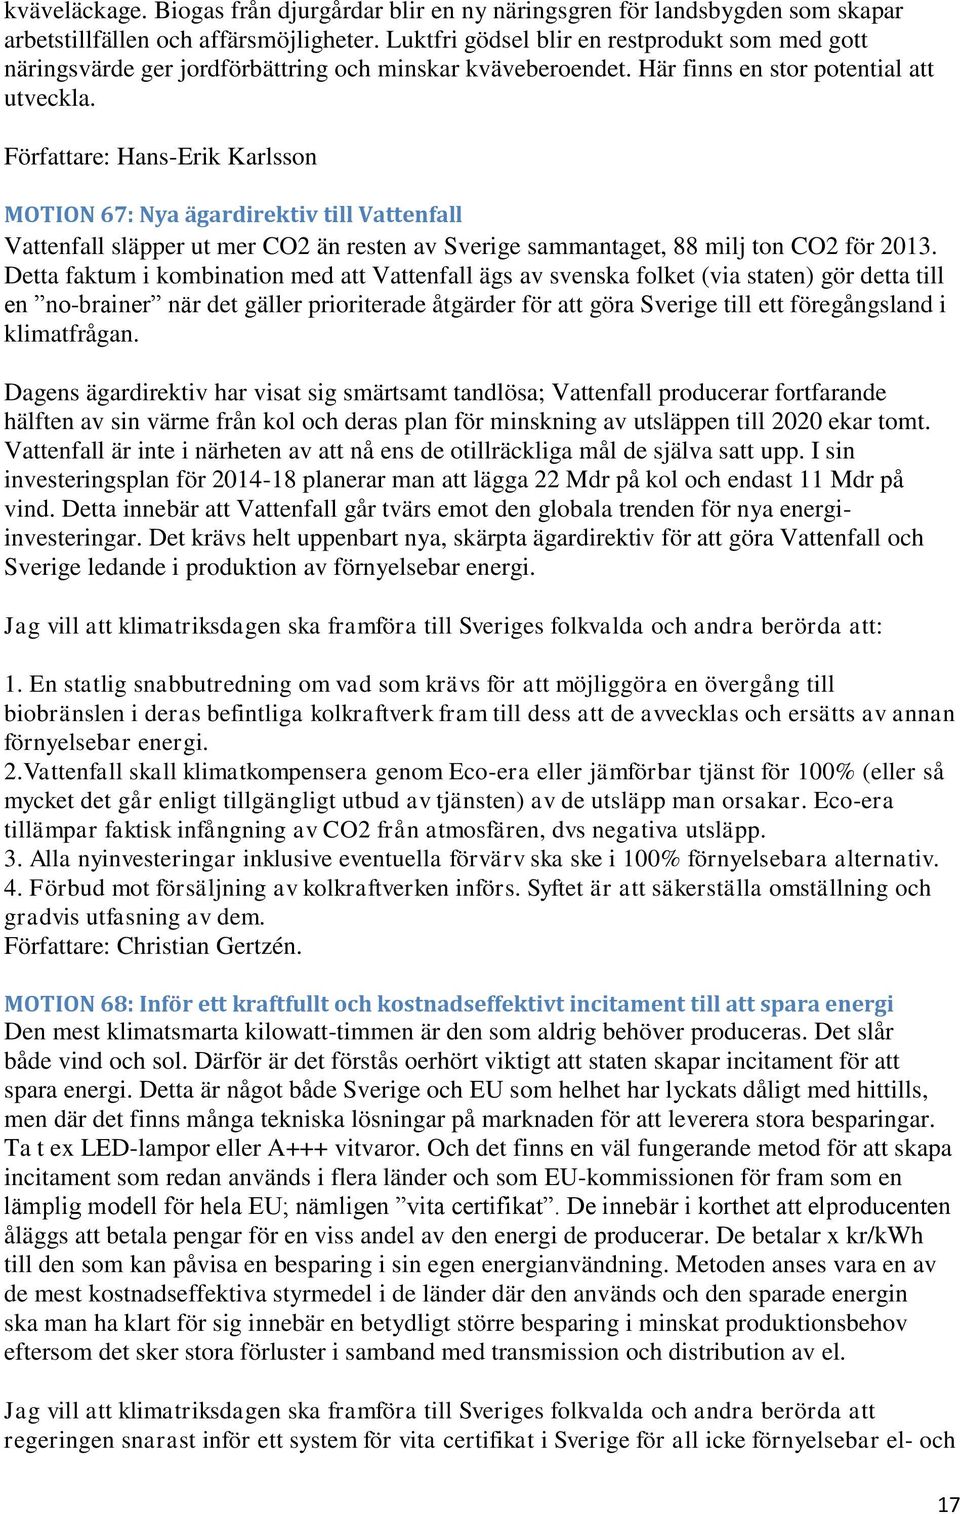 Författare: Hans-Erik Karlsson MOTION 67: Nya ägardirektiv till Vattenfall Vattenfall släpper ut mer CO2 än resten av Sverige sammantaget, 88 milj ton CO2 för 2013.